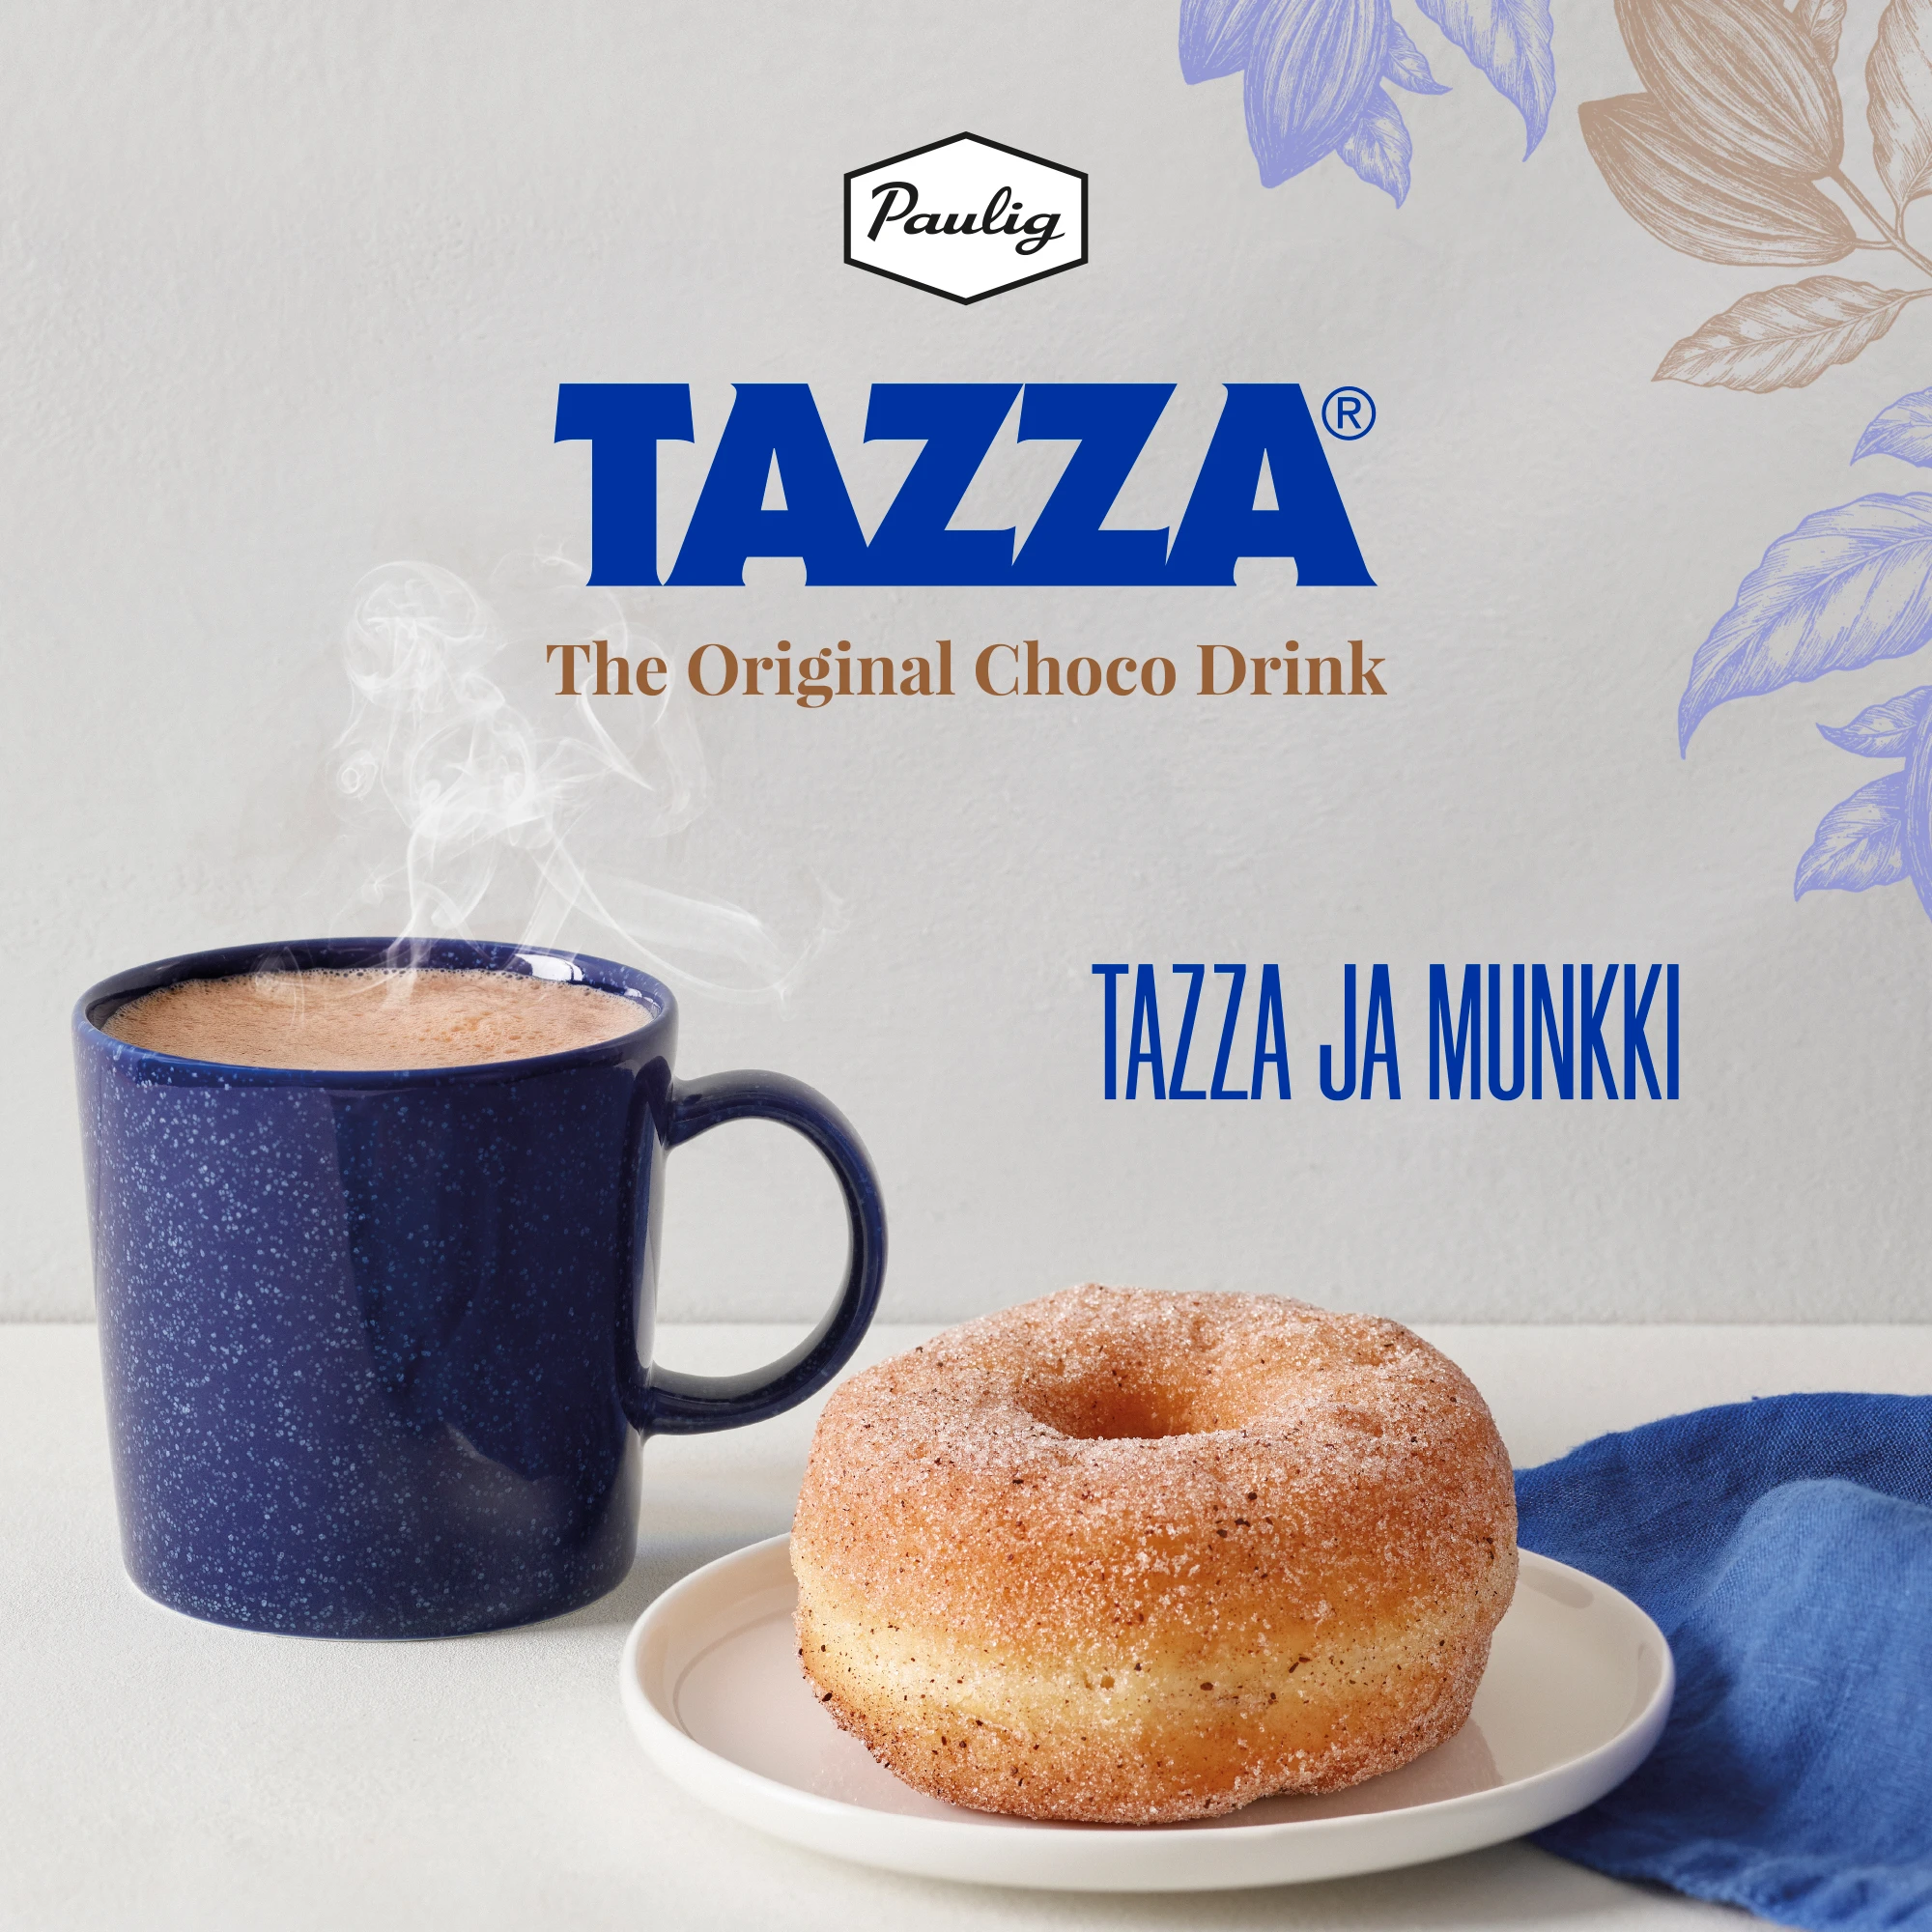 Tazza doughnut some 2000x2000px FI